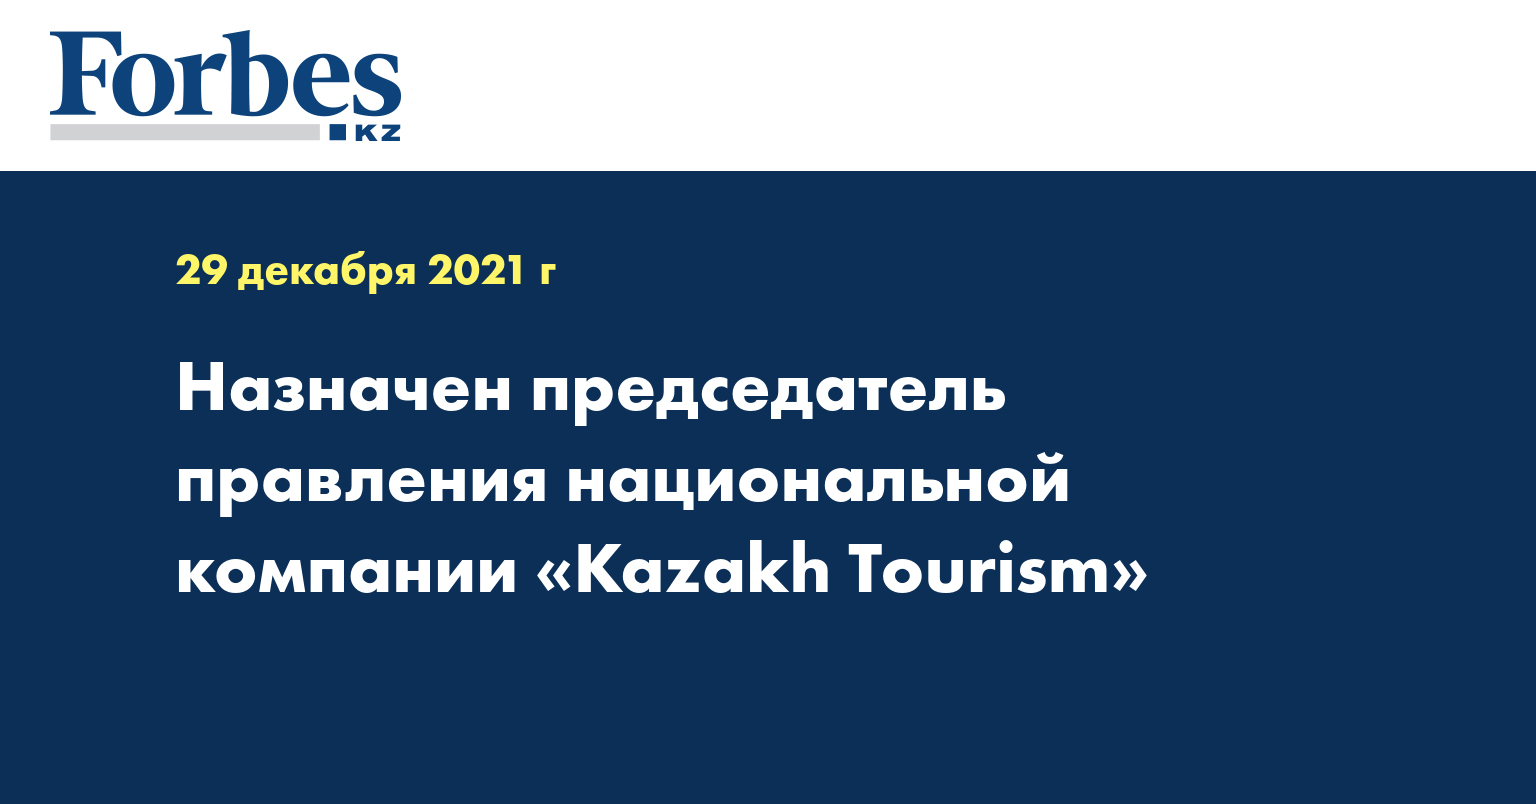 Назначен председатель правления национальной компании «Kazakh Tourism»